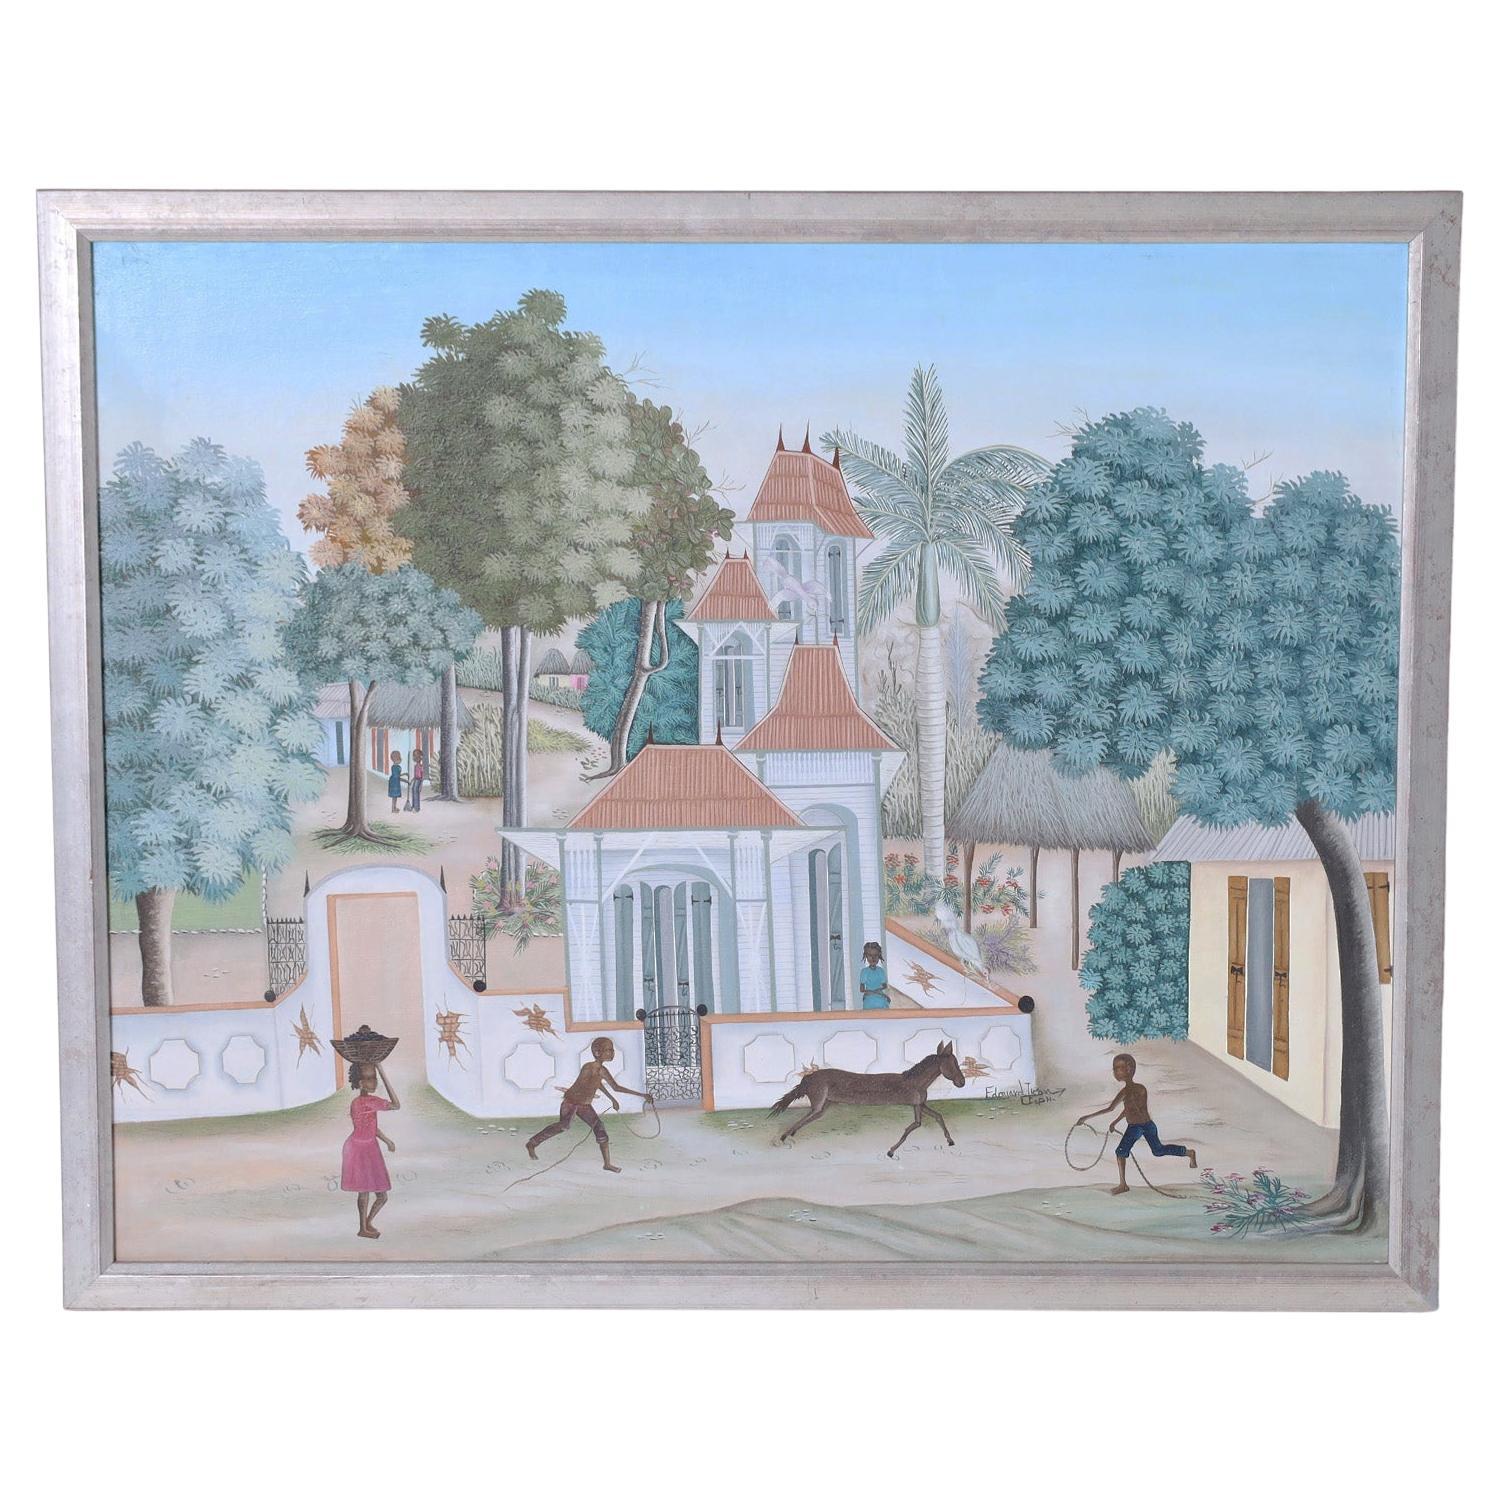 Peinture à l'huile sur toile d'un village haïtien par Edouard Tran